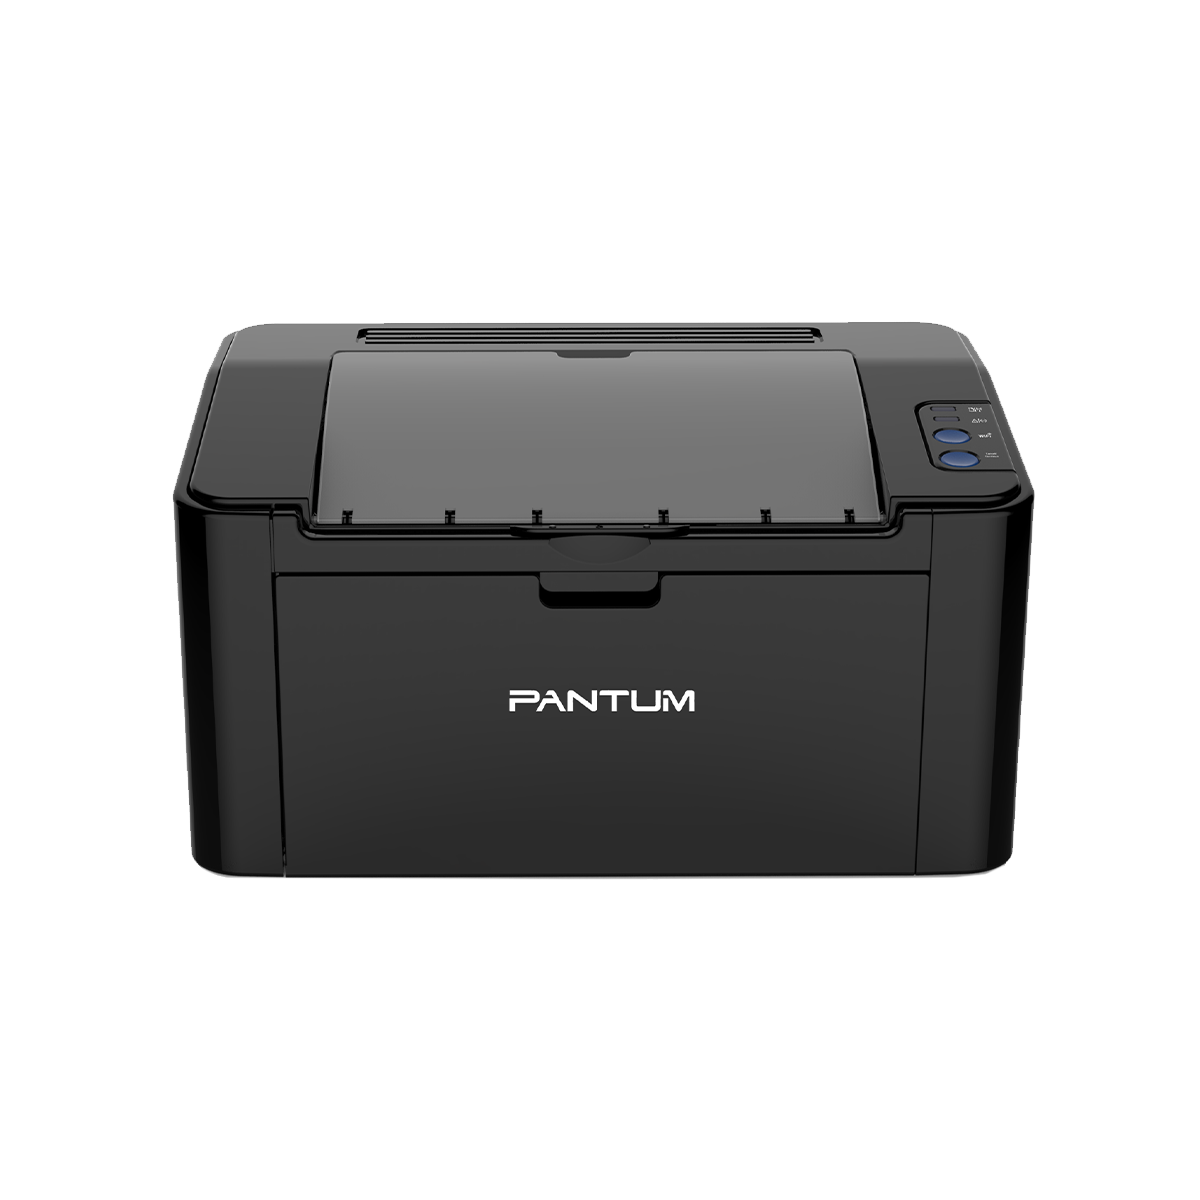 Pantum P2500W Printer